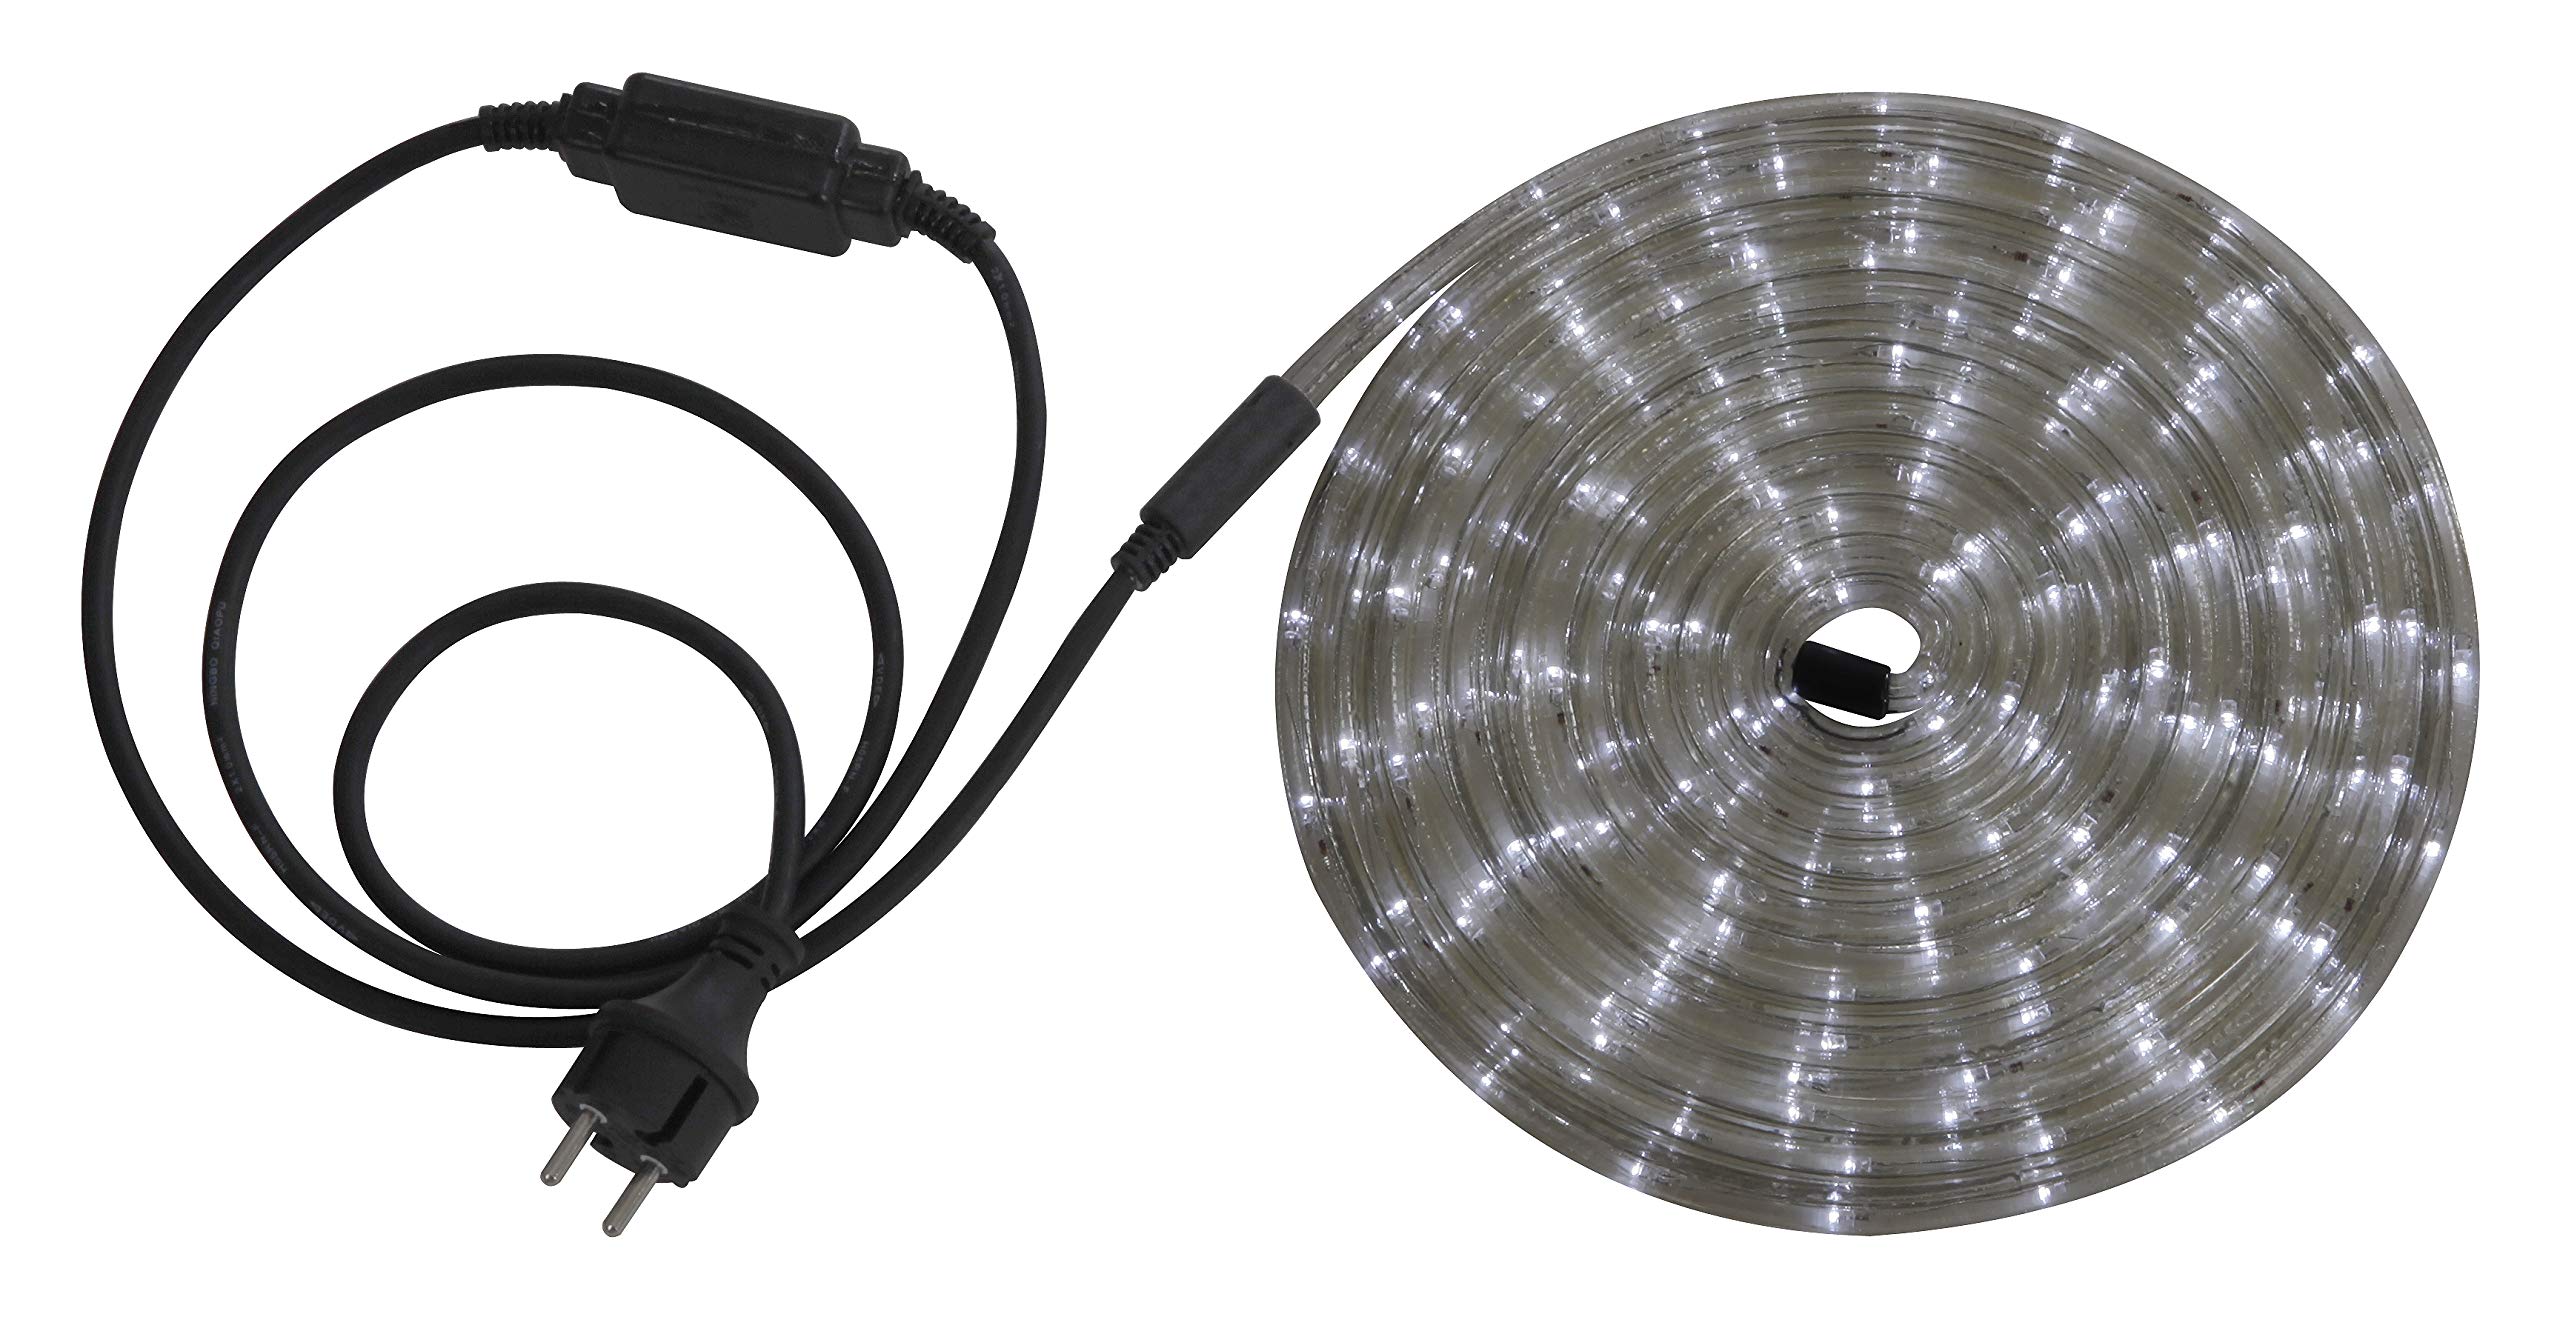 Globo Lichtschlauch mit 1.5 m Zuleitung und Stecker in schwarz inklusiv 24 LED's je Laufmeter, 6 m, weiß 38961